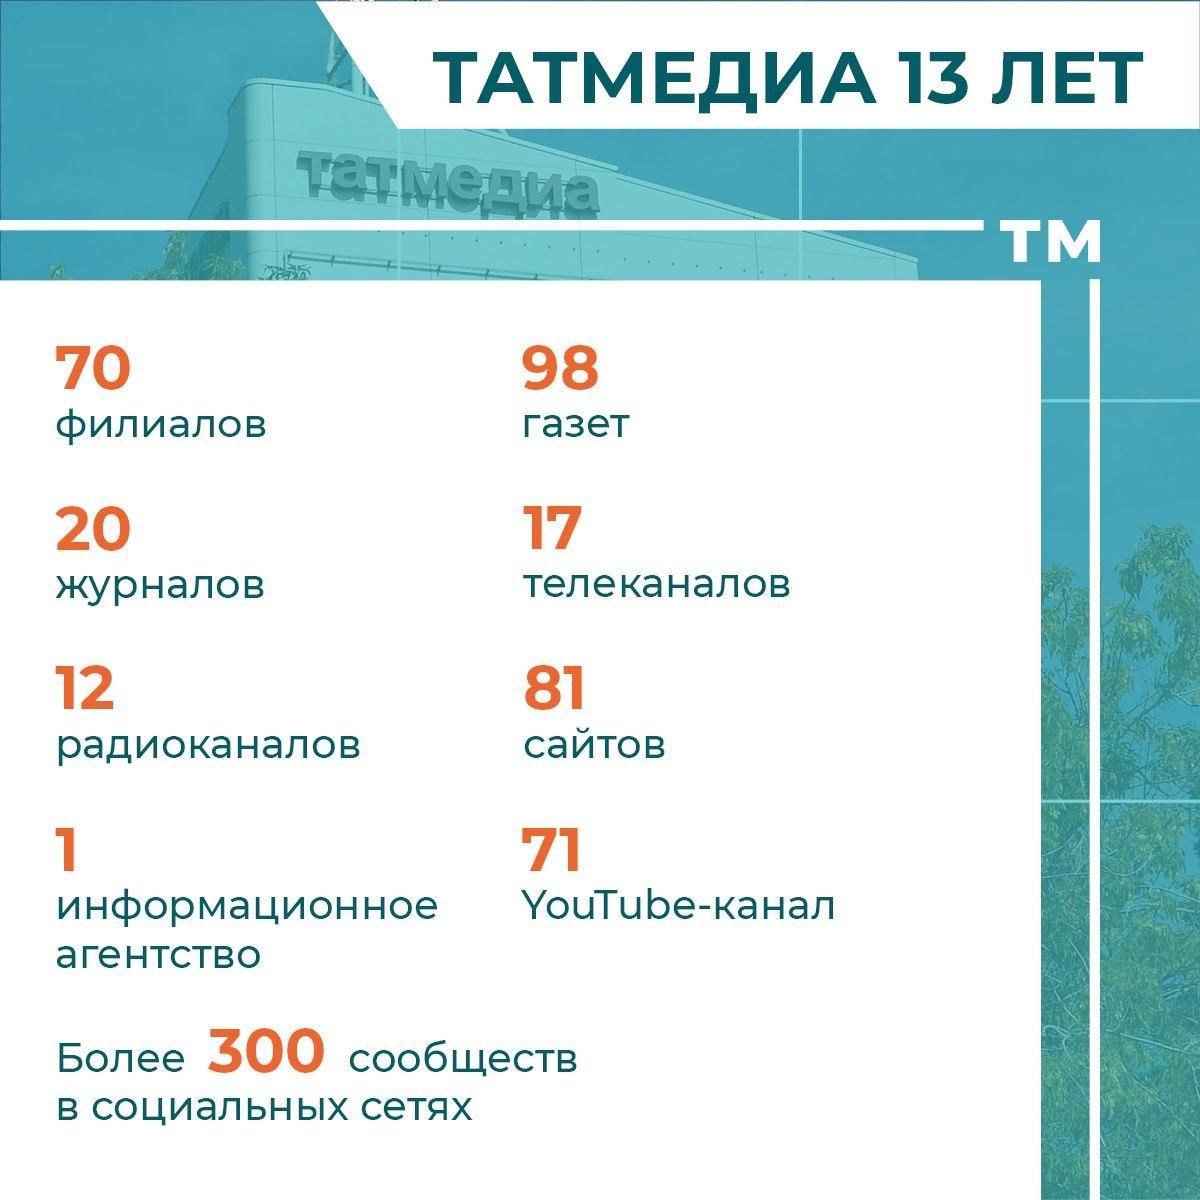 13 фактов о «Татмедиа» к 13-летию медиахолдинга